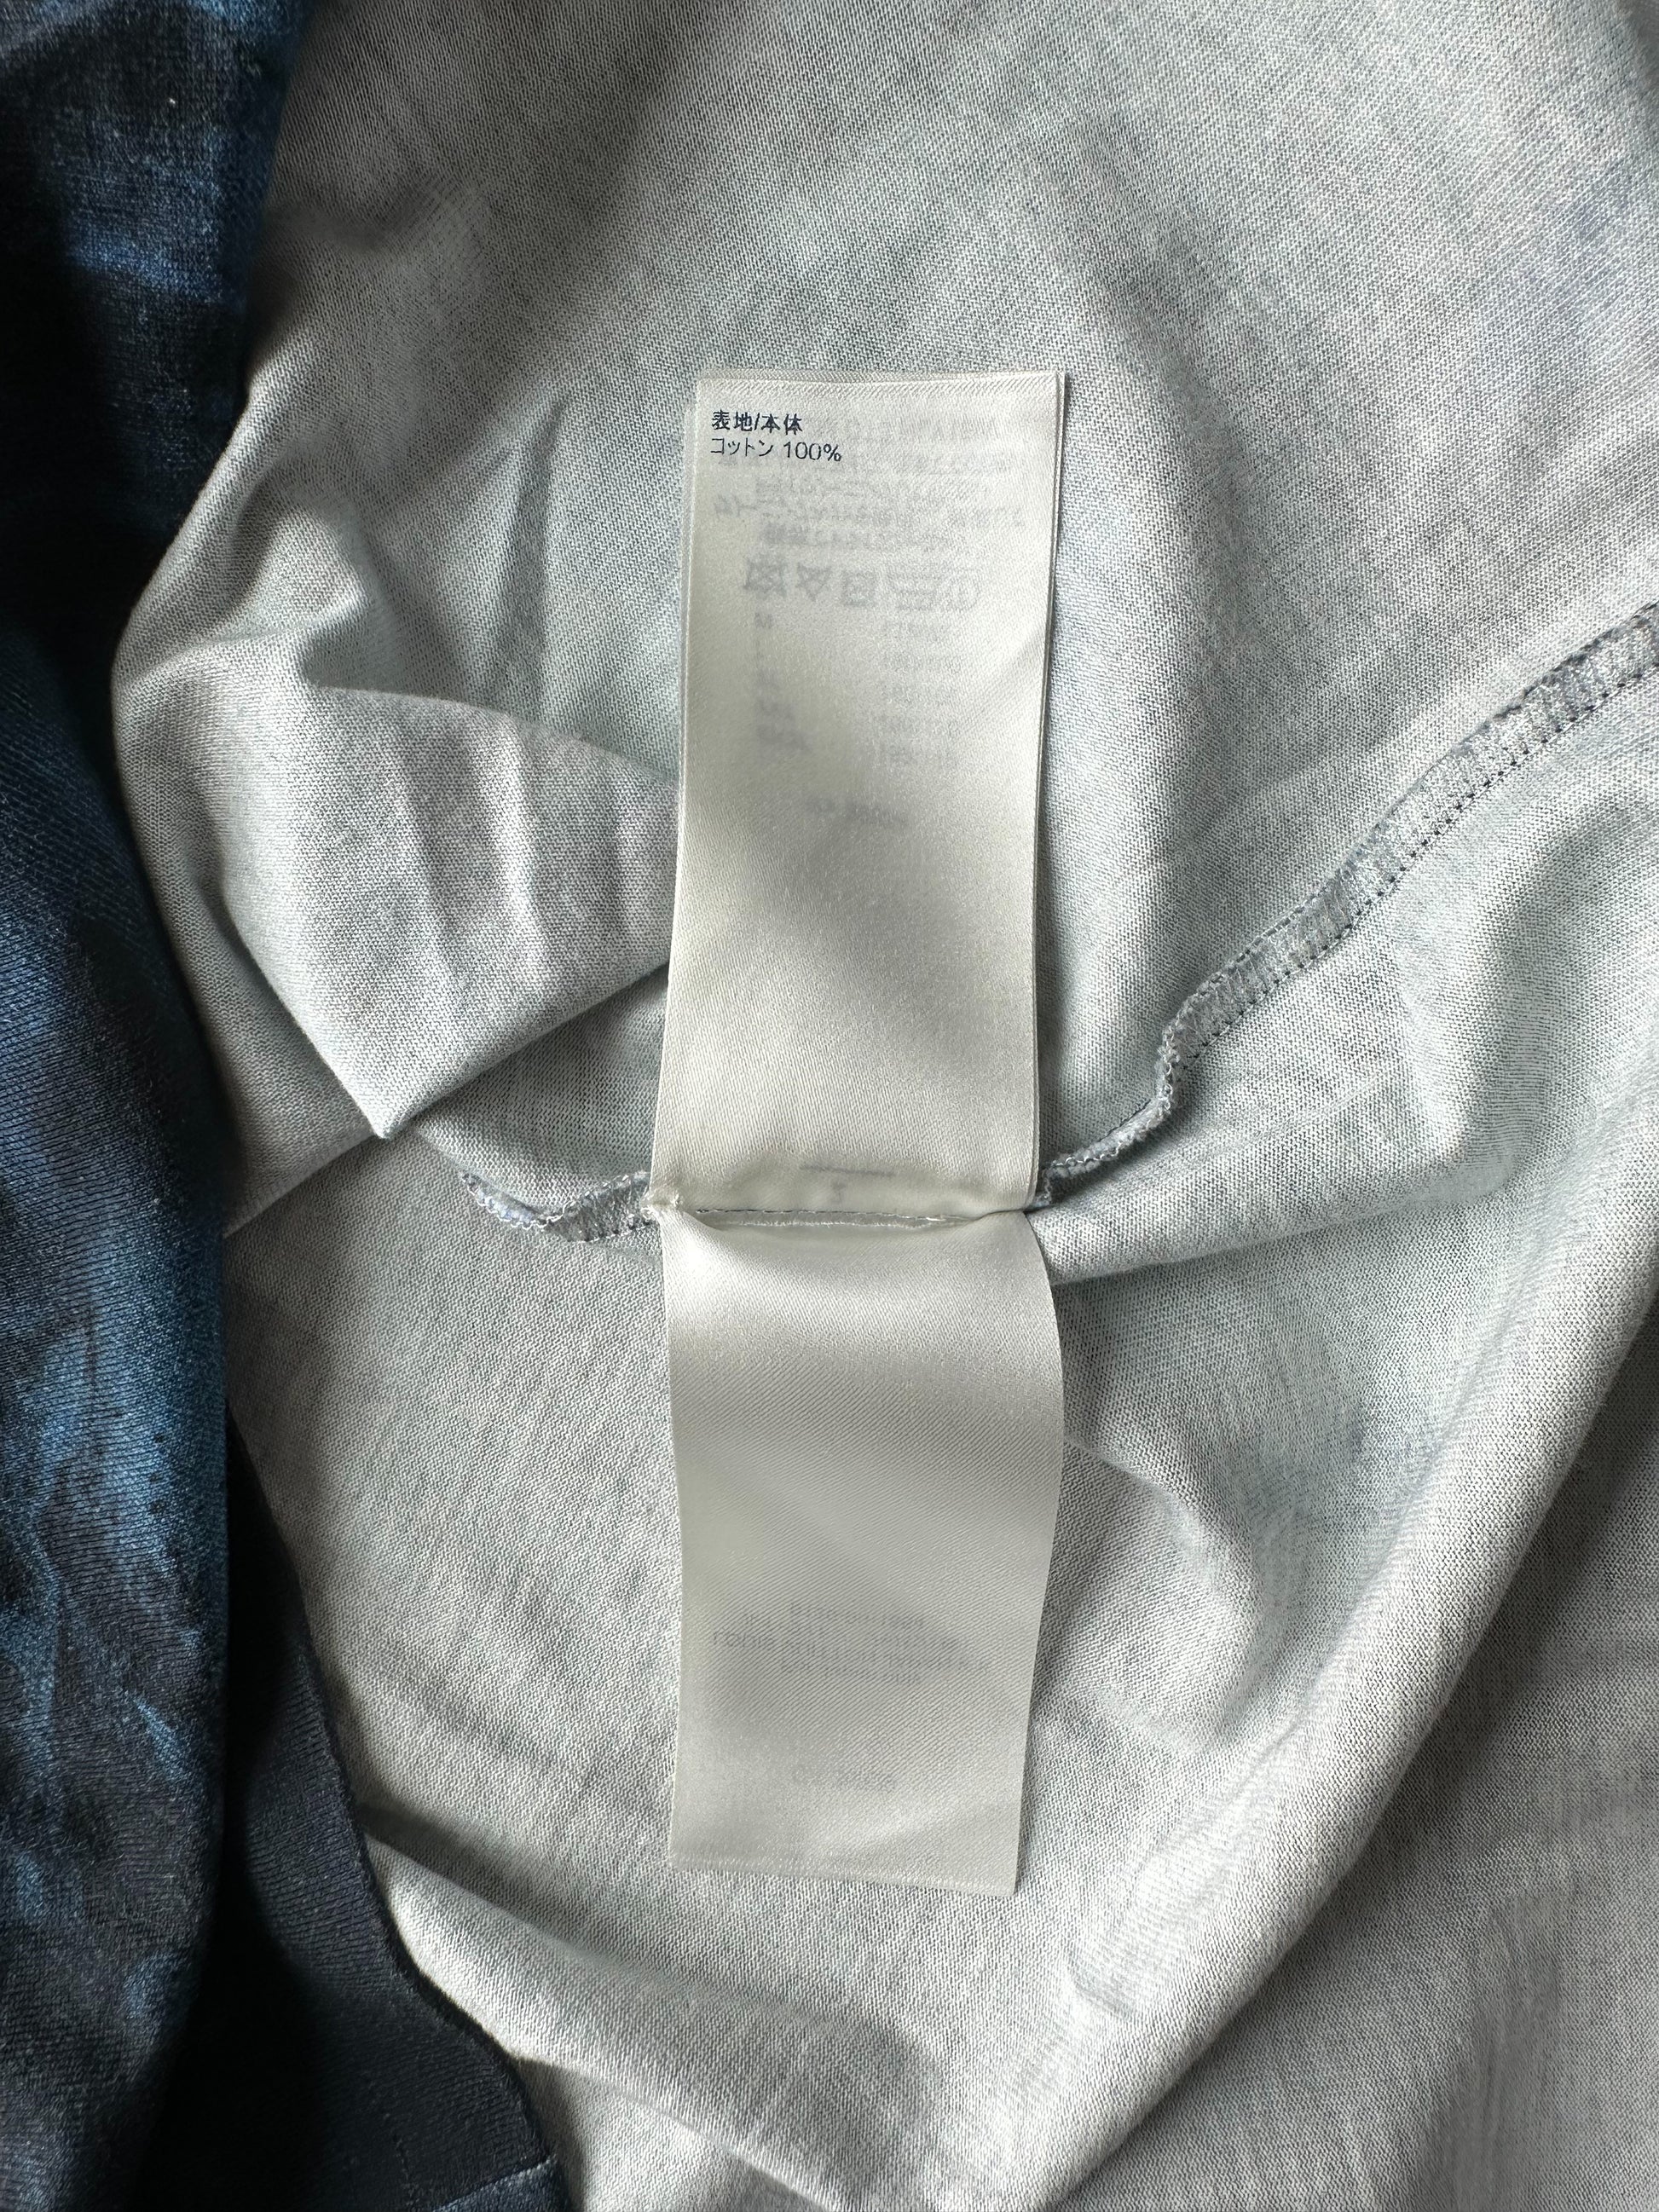 Louis Vuitton Damier Salt Print Short Sleeve Shirt XL Brand New 1A8WBB